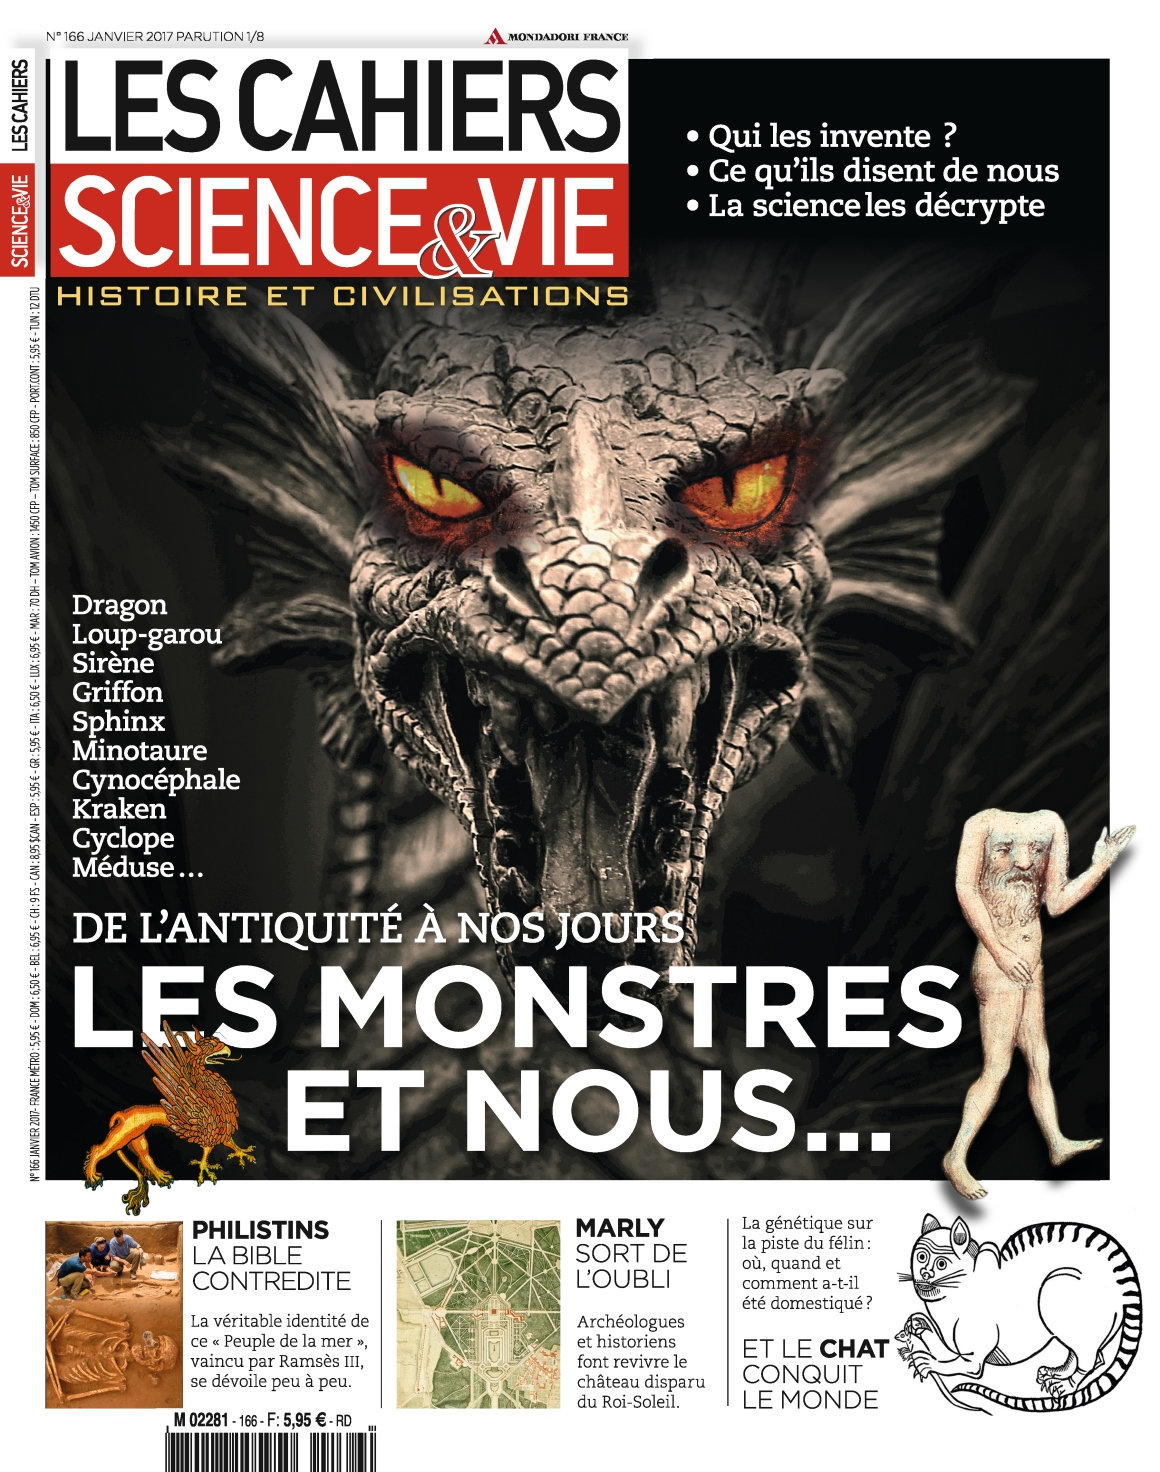 Les Cahiers de Science & Vie N°166 - Janvier 2017 